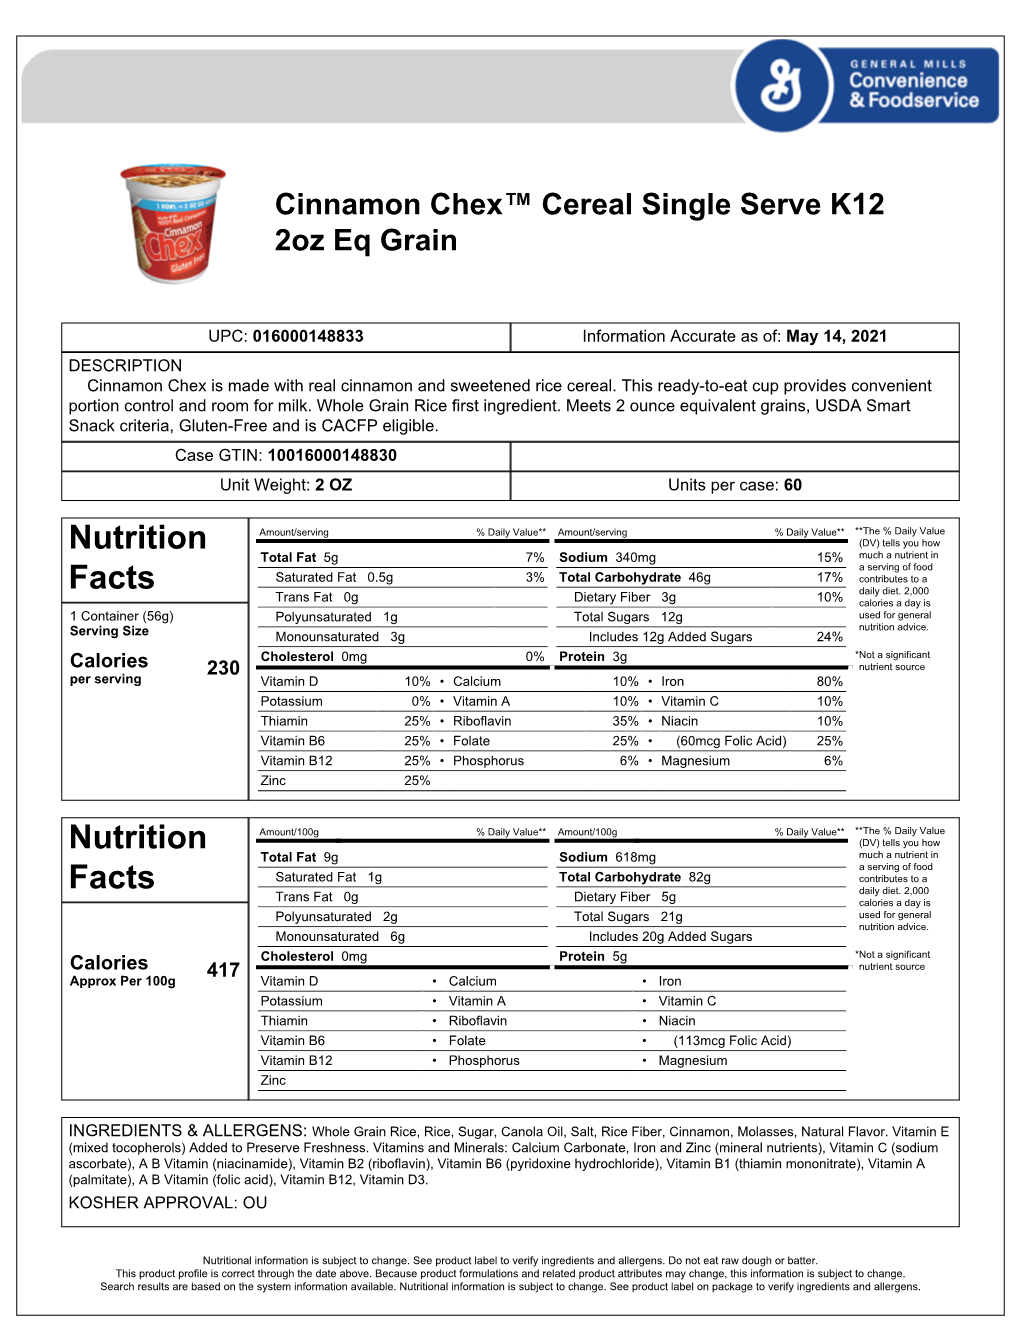 Cinnamon Chex™ Cereal Single Serve K12 2Oz Eq Grain